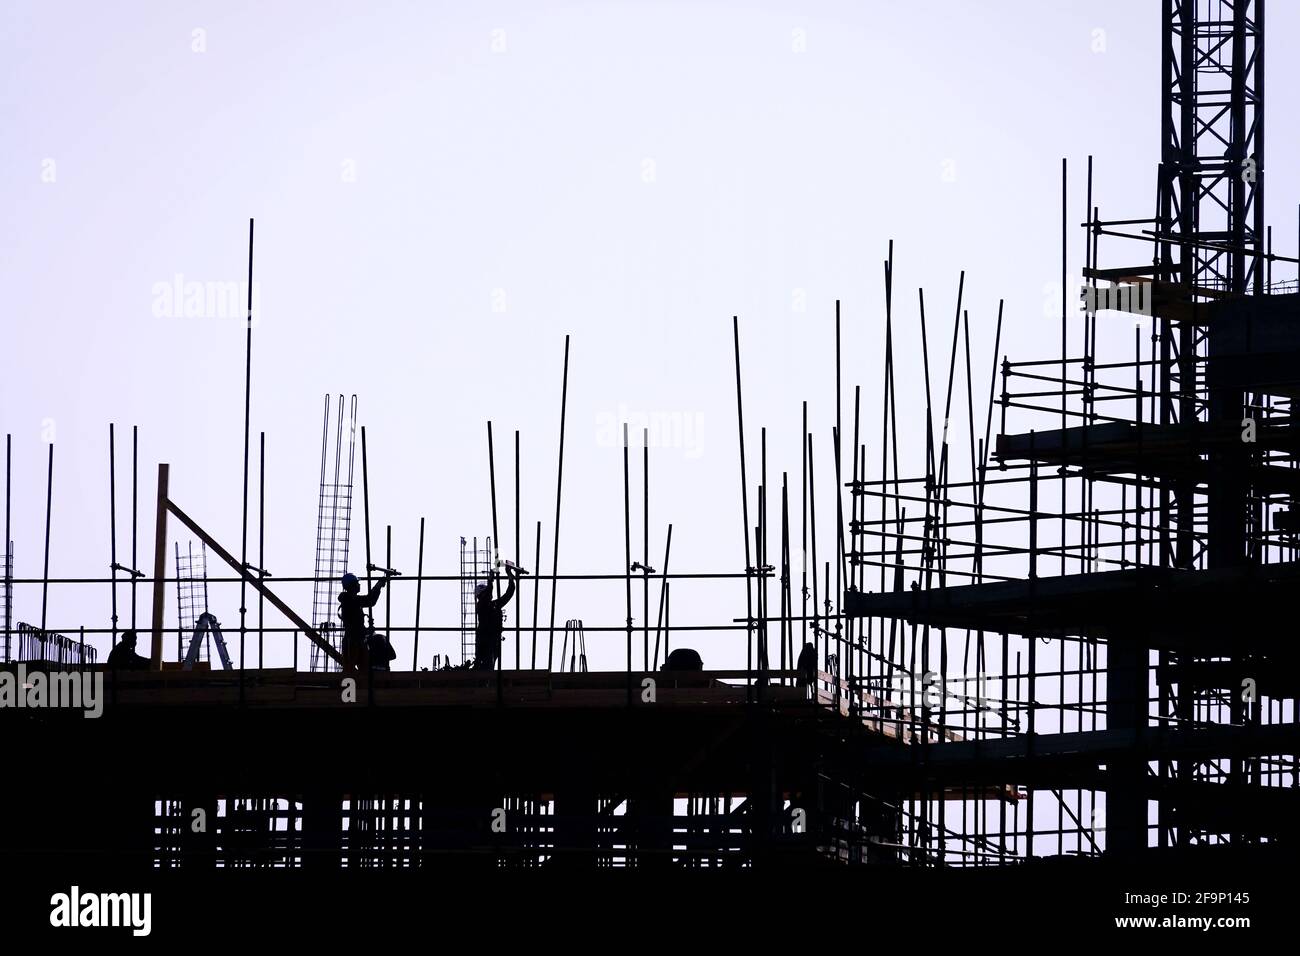 El grupo de trabajadores que trabajan en un lugar de construcción. Foto de stock